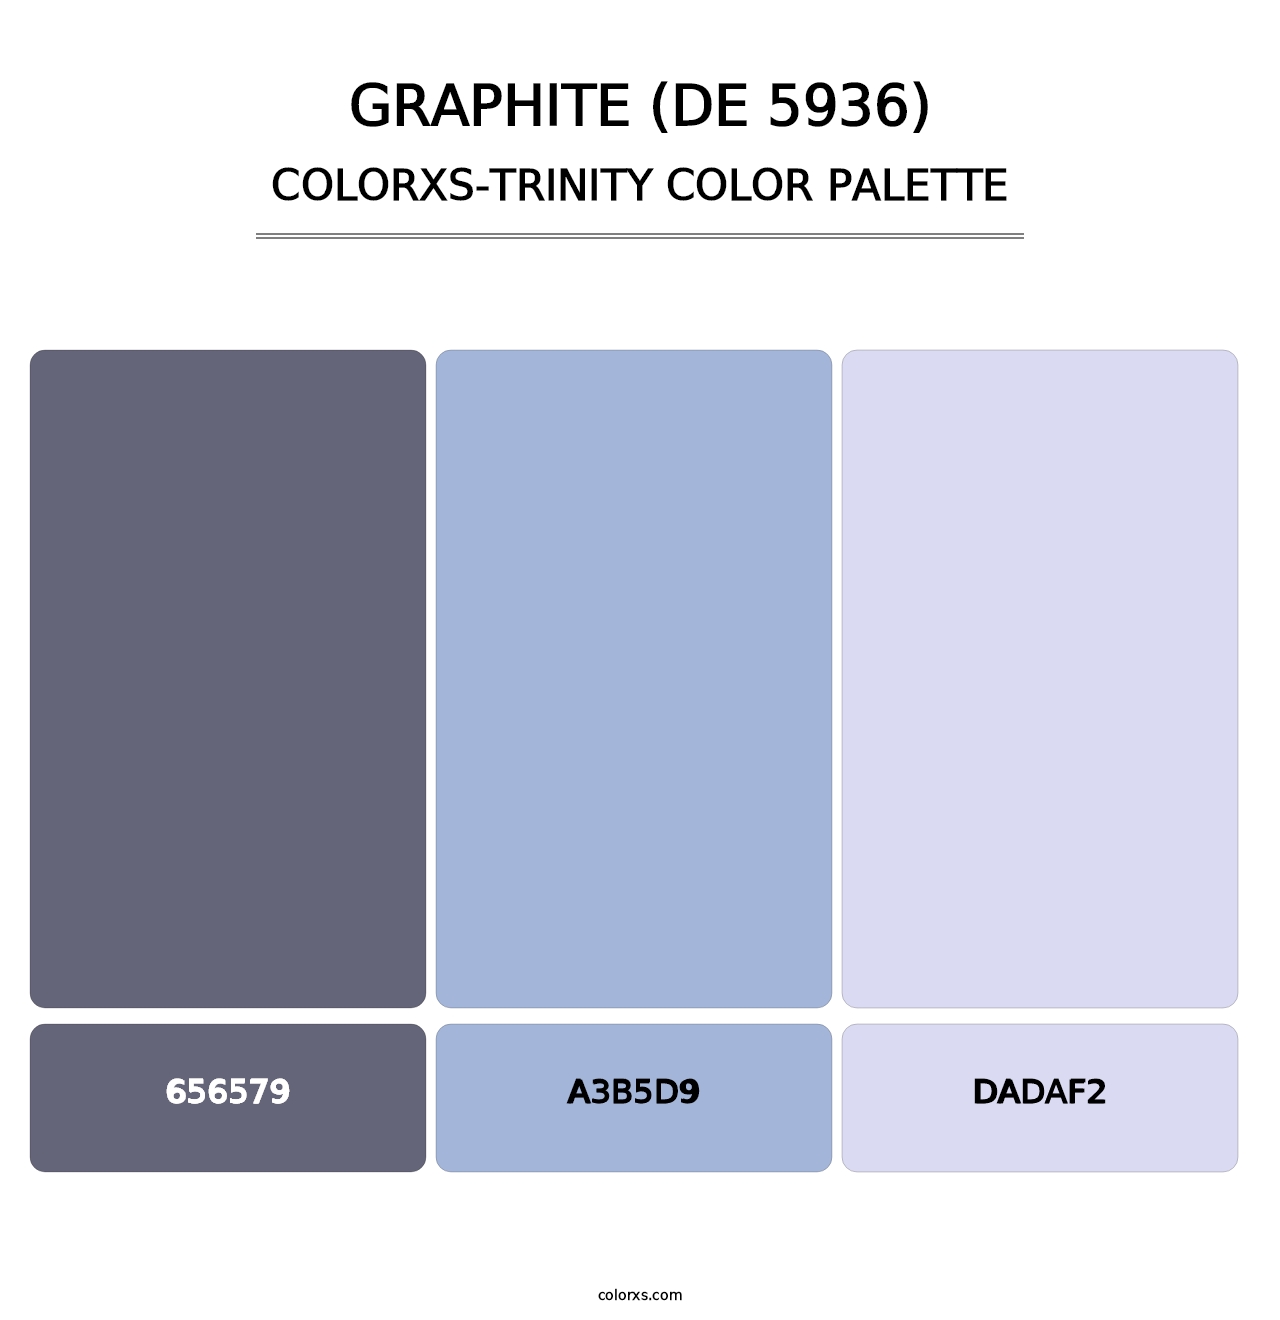 Graphite (DE 5936) - Colorxs Trinity Palette